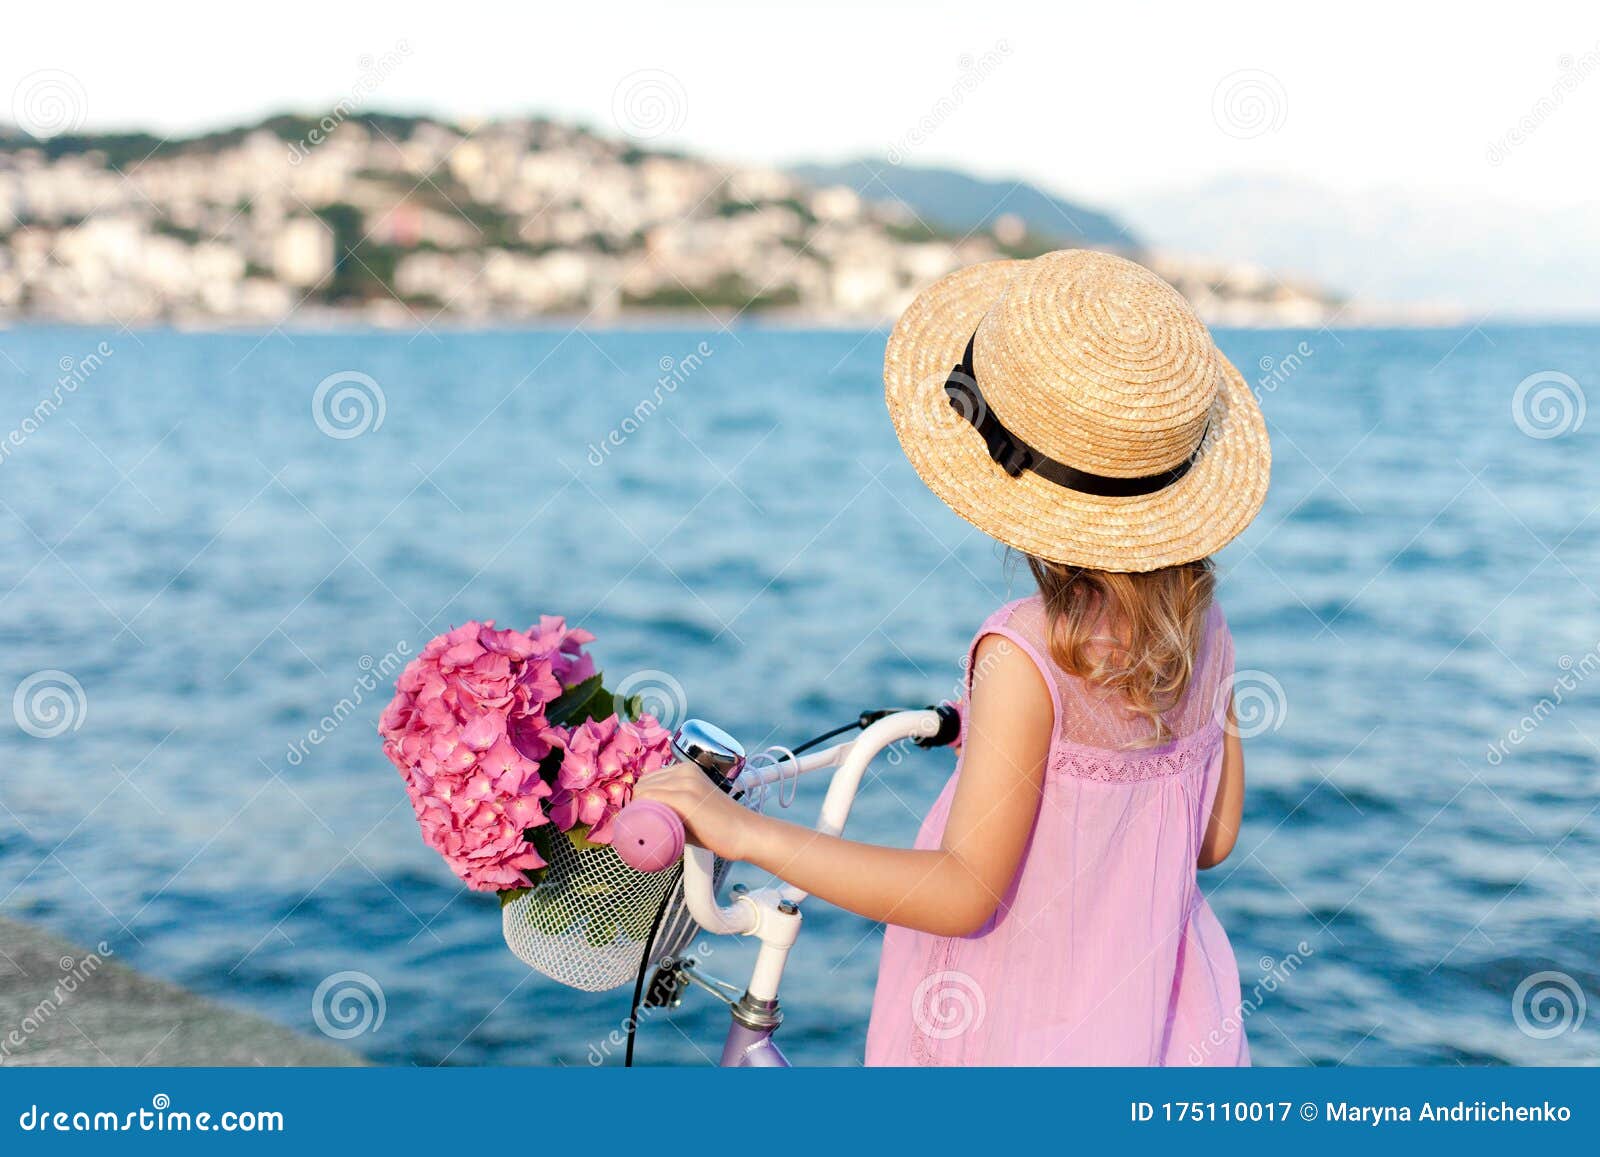 Contradecir Marcha atrás en Pequeña Dama Con Una Romántica Bicicleta Y Flores Rosas En La Playa De Mar. Una  Niña Con Sombrero De Paja Y Vestido En La Costa Imagen de archivo - Imagen  de momentos,